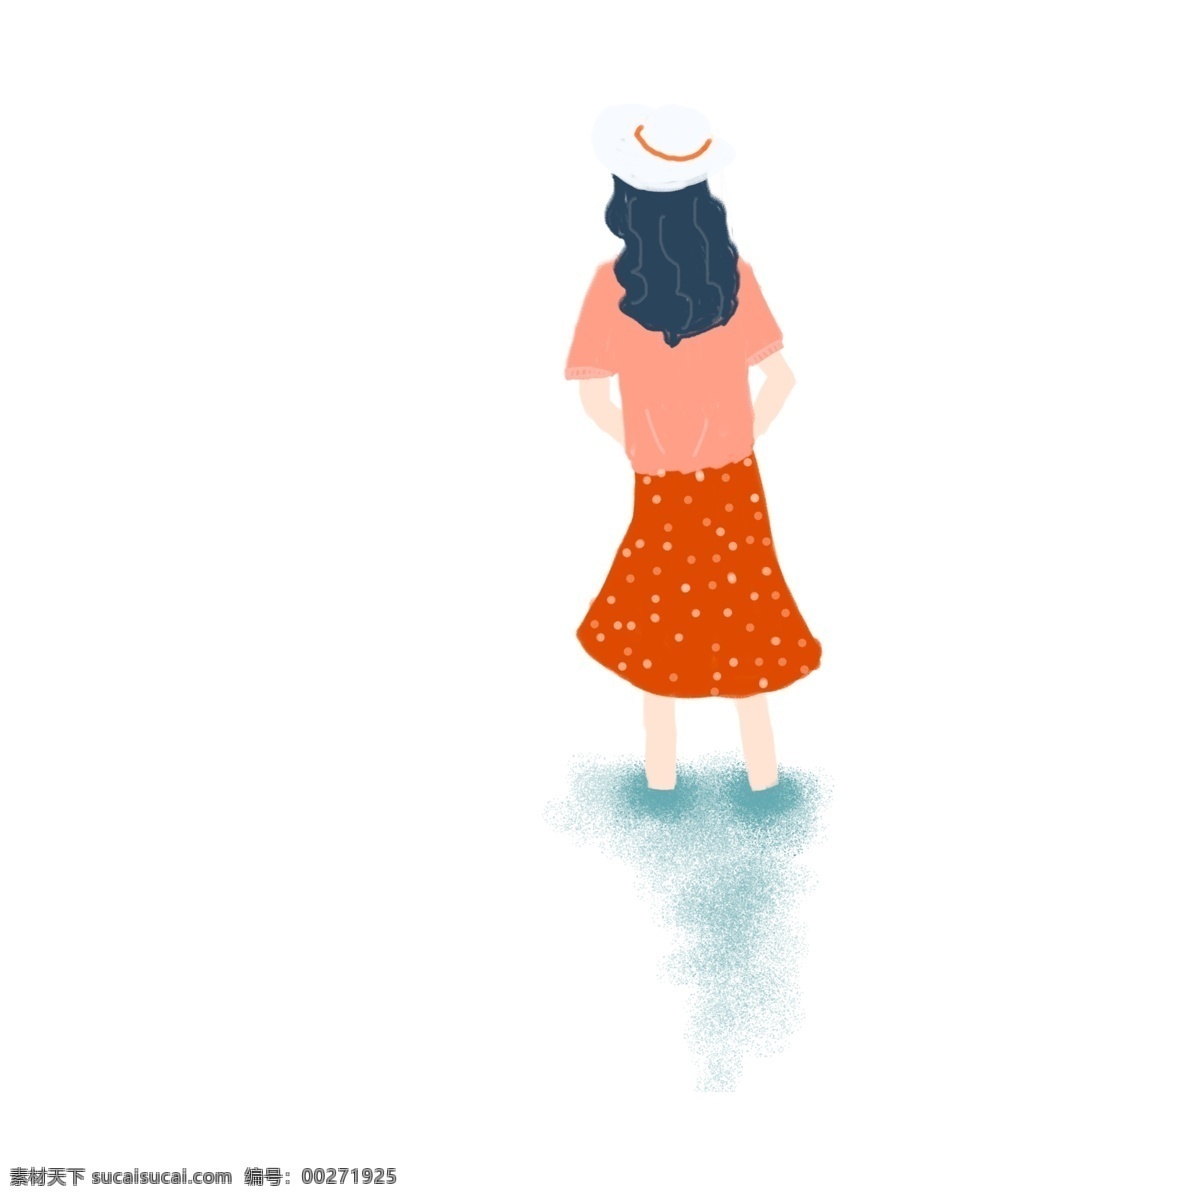 小 清新 可爱 一个 旅行 女孩 手绘 小清晰 帽子 插画 背影